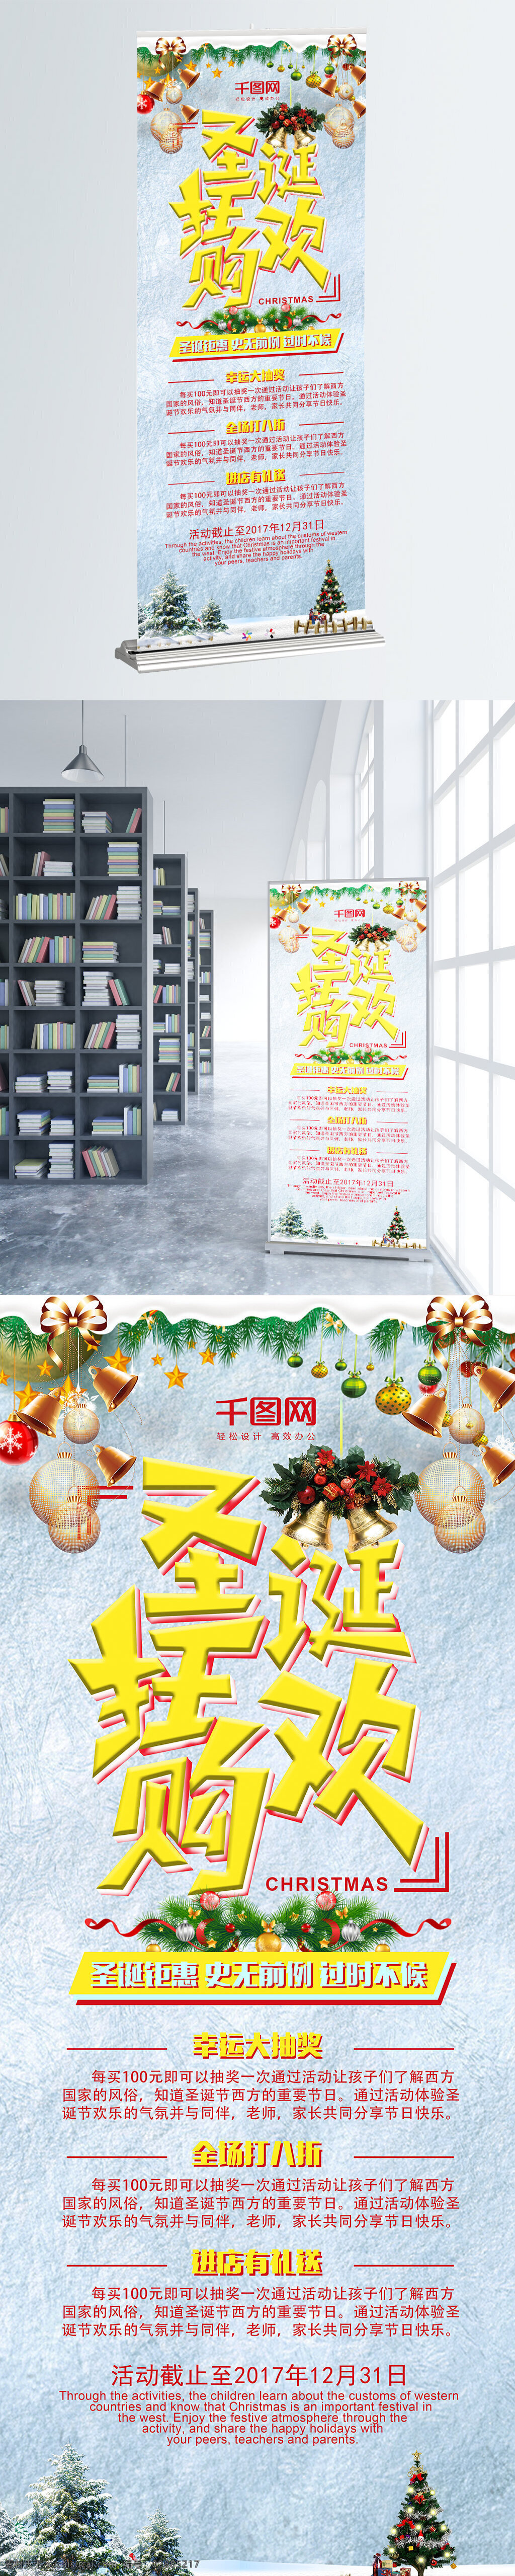 圣诞节 狂欢 购 节日 展架 圣诞 圣诞狂欢购 促销 商业 促销海报 海报 圣诞节海报